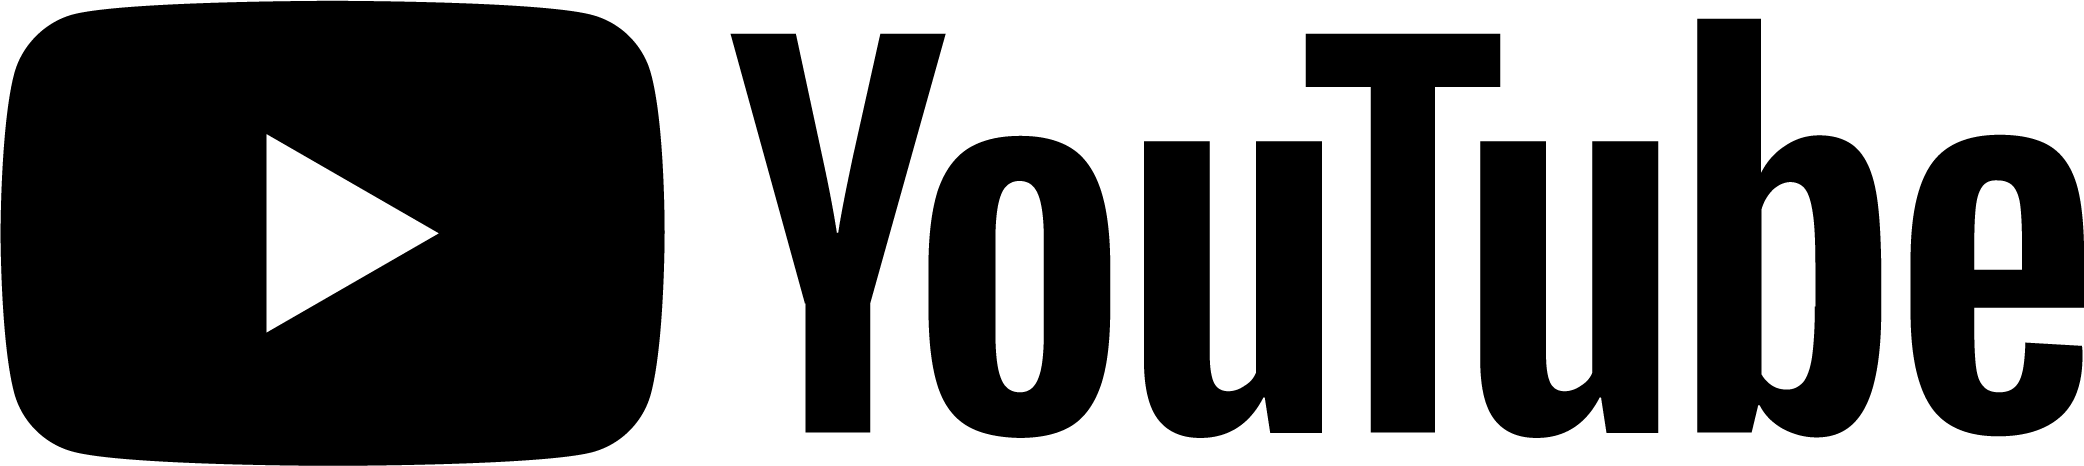 Youtube Logo PNG Images, Transparent Youtube Logo Image Download - PNGitem